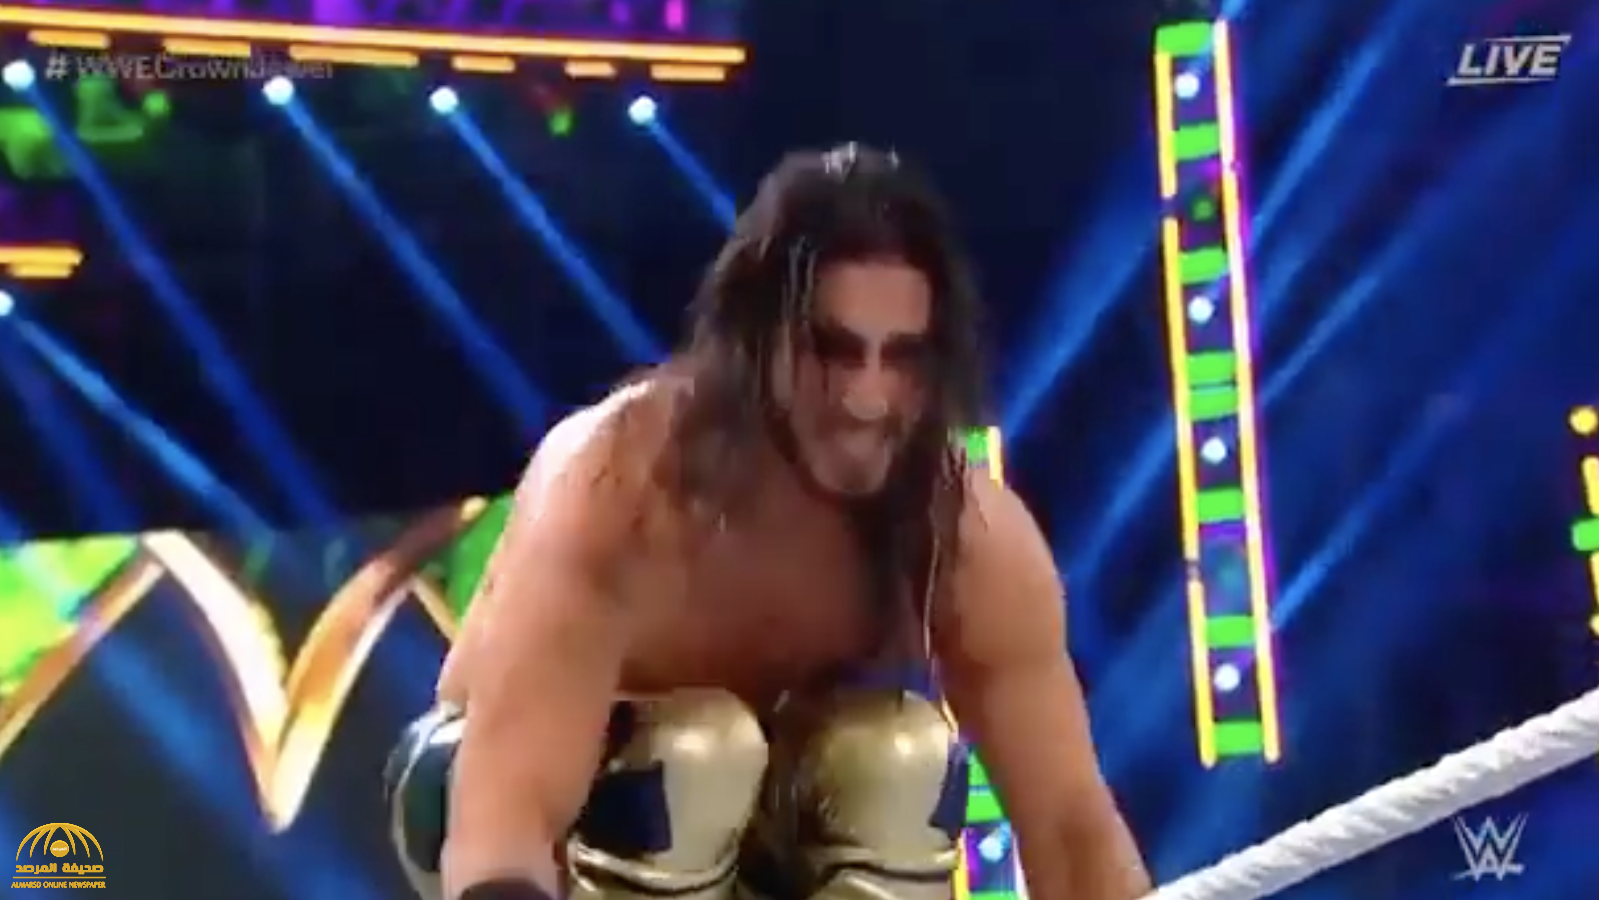 شاهد.. لحظة فوز المصارع منصور الشهيل في "WWE كراون جول" على خصمه الأمريكي